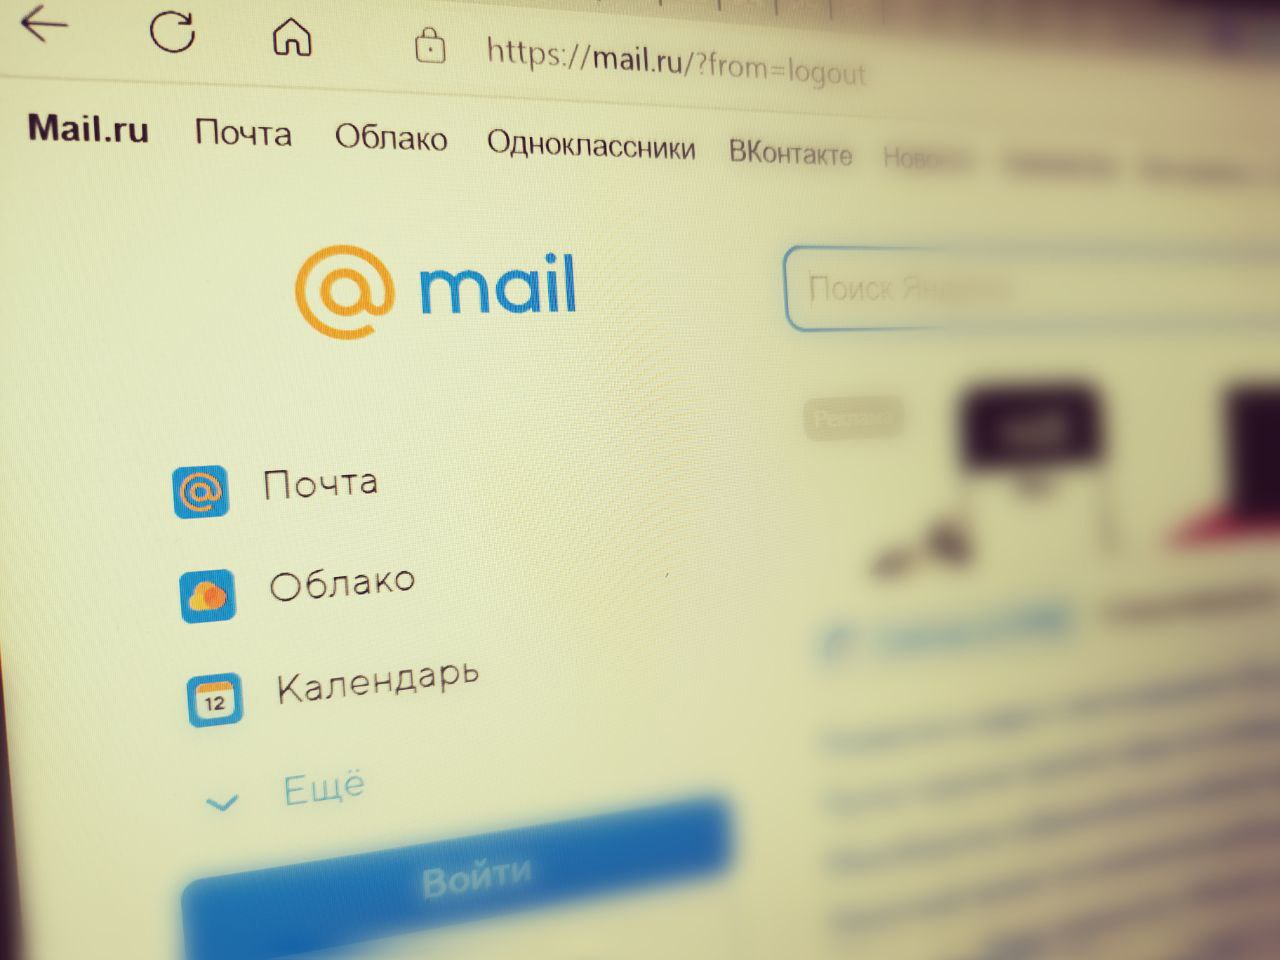 Минобороны РФ предупредило об электронных письмах, имитирующих повестки в военкомат